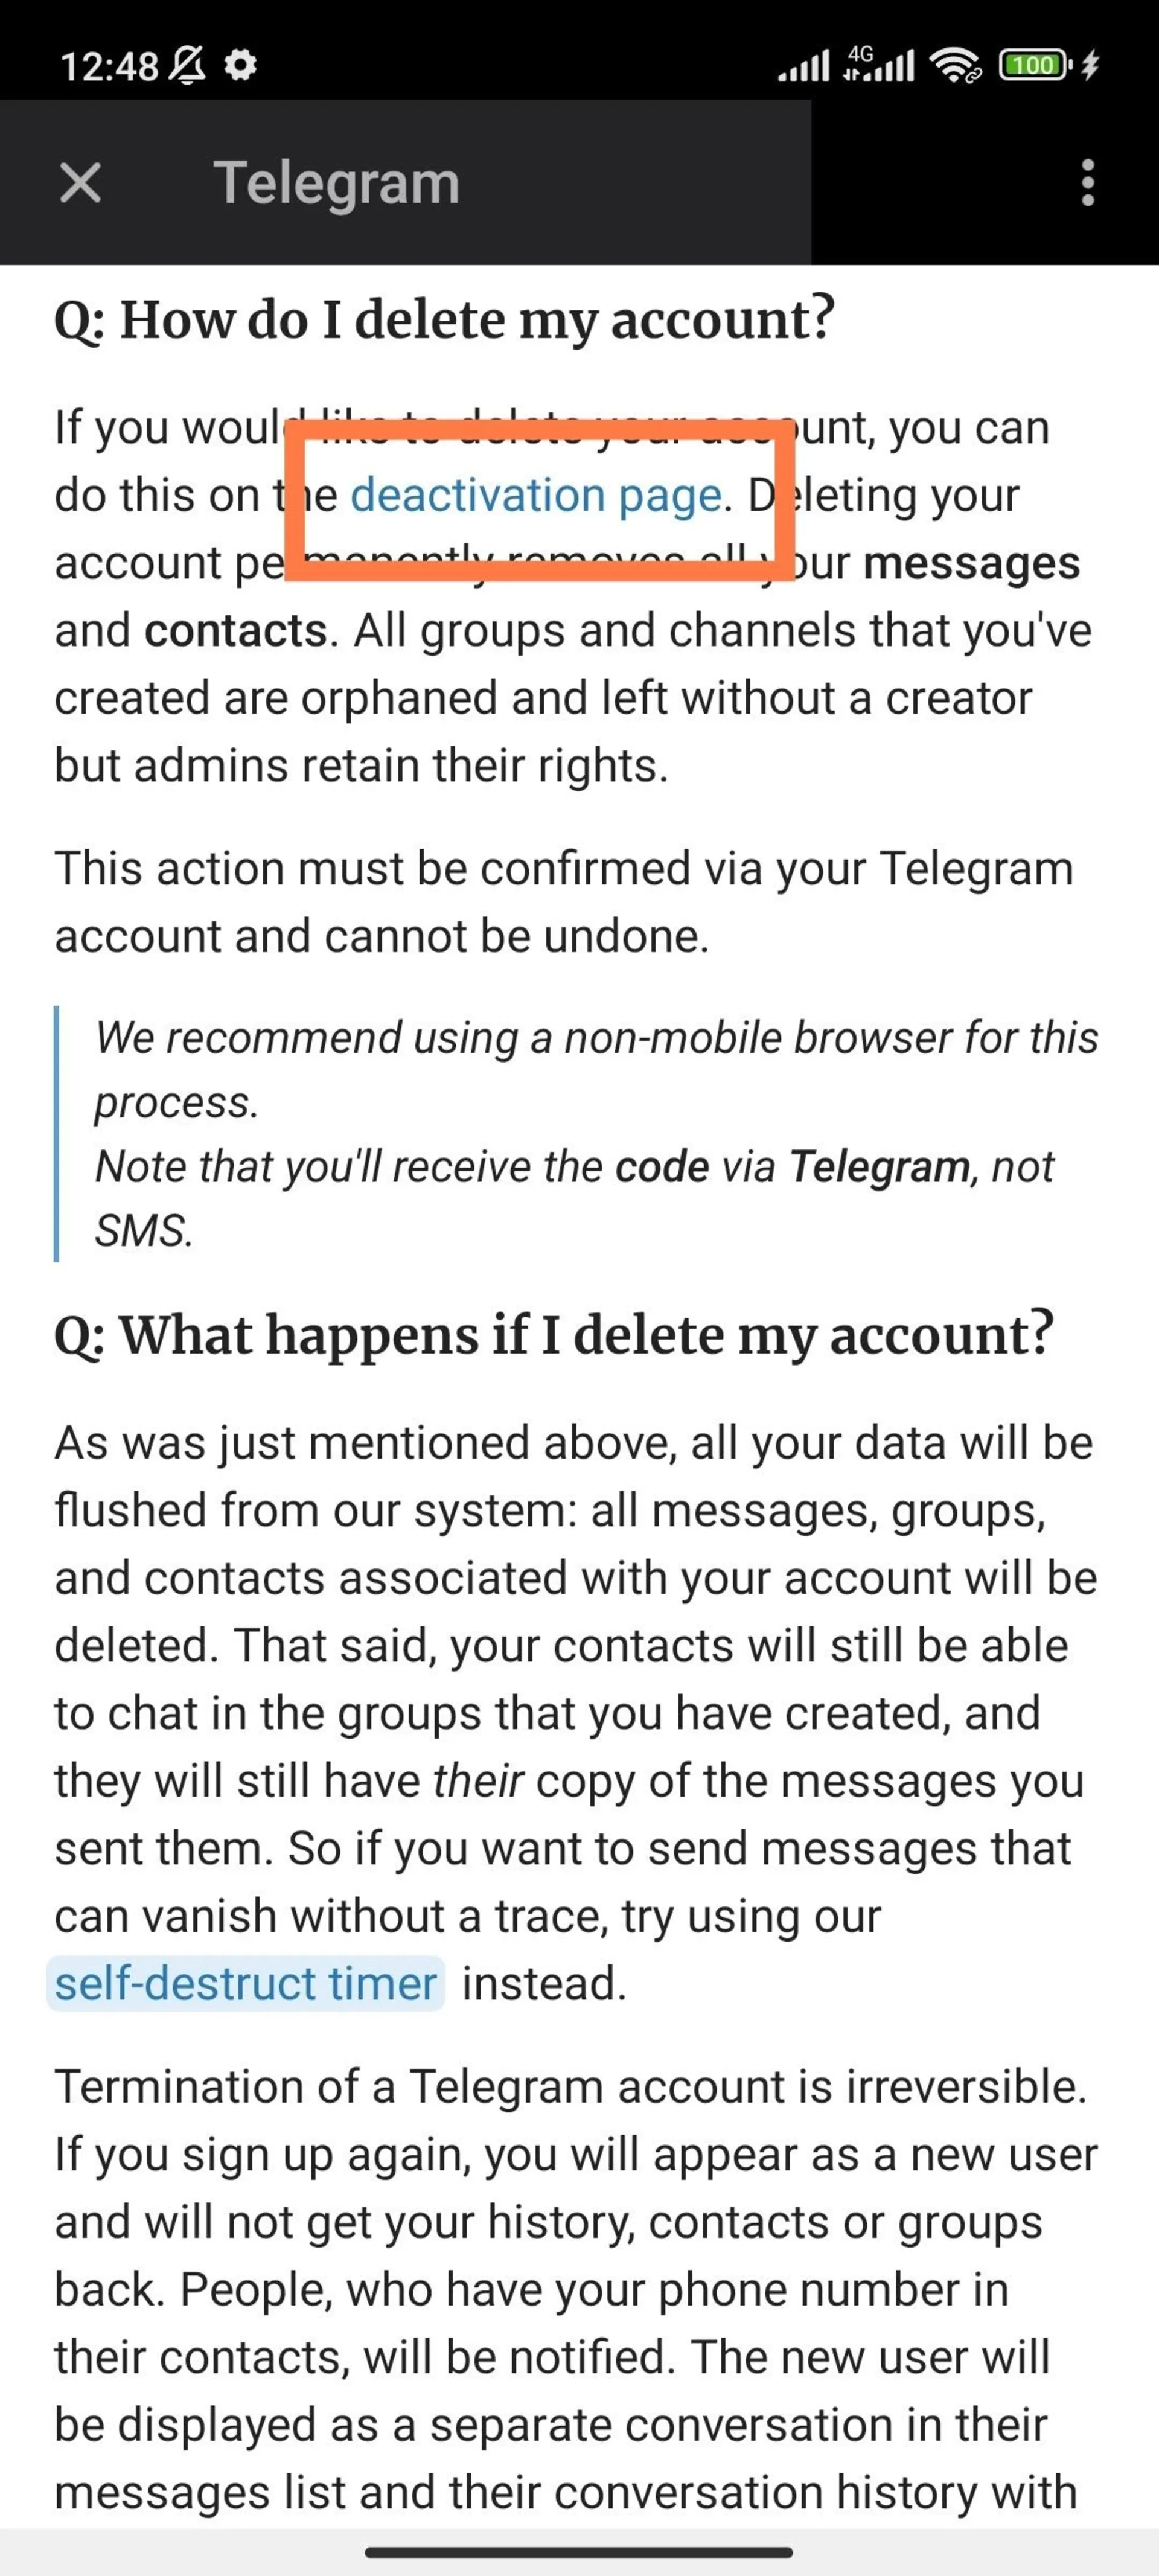 گزینه deactivation page در صفحه سؤالات رایج اپلیکیشن تلگرام